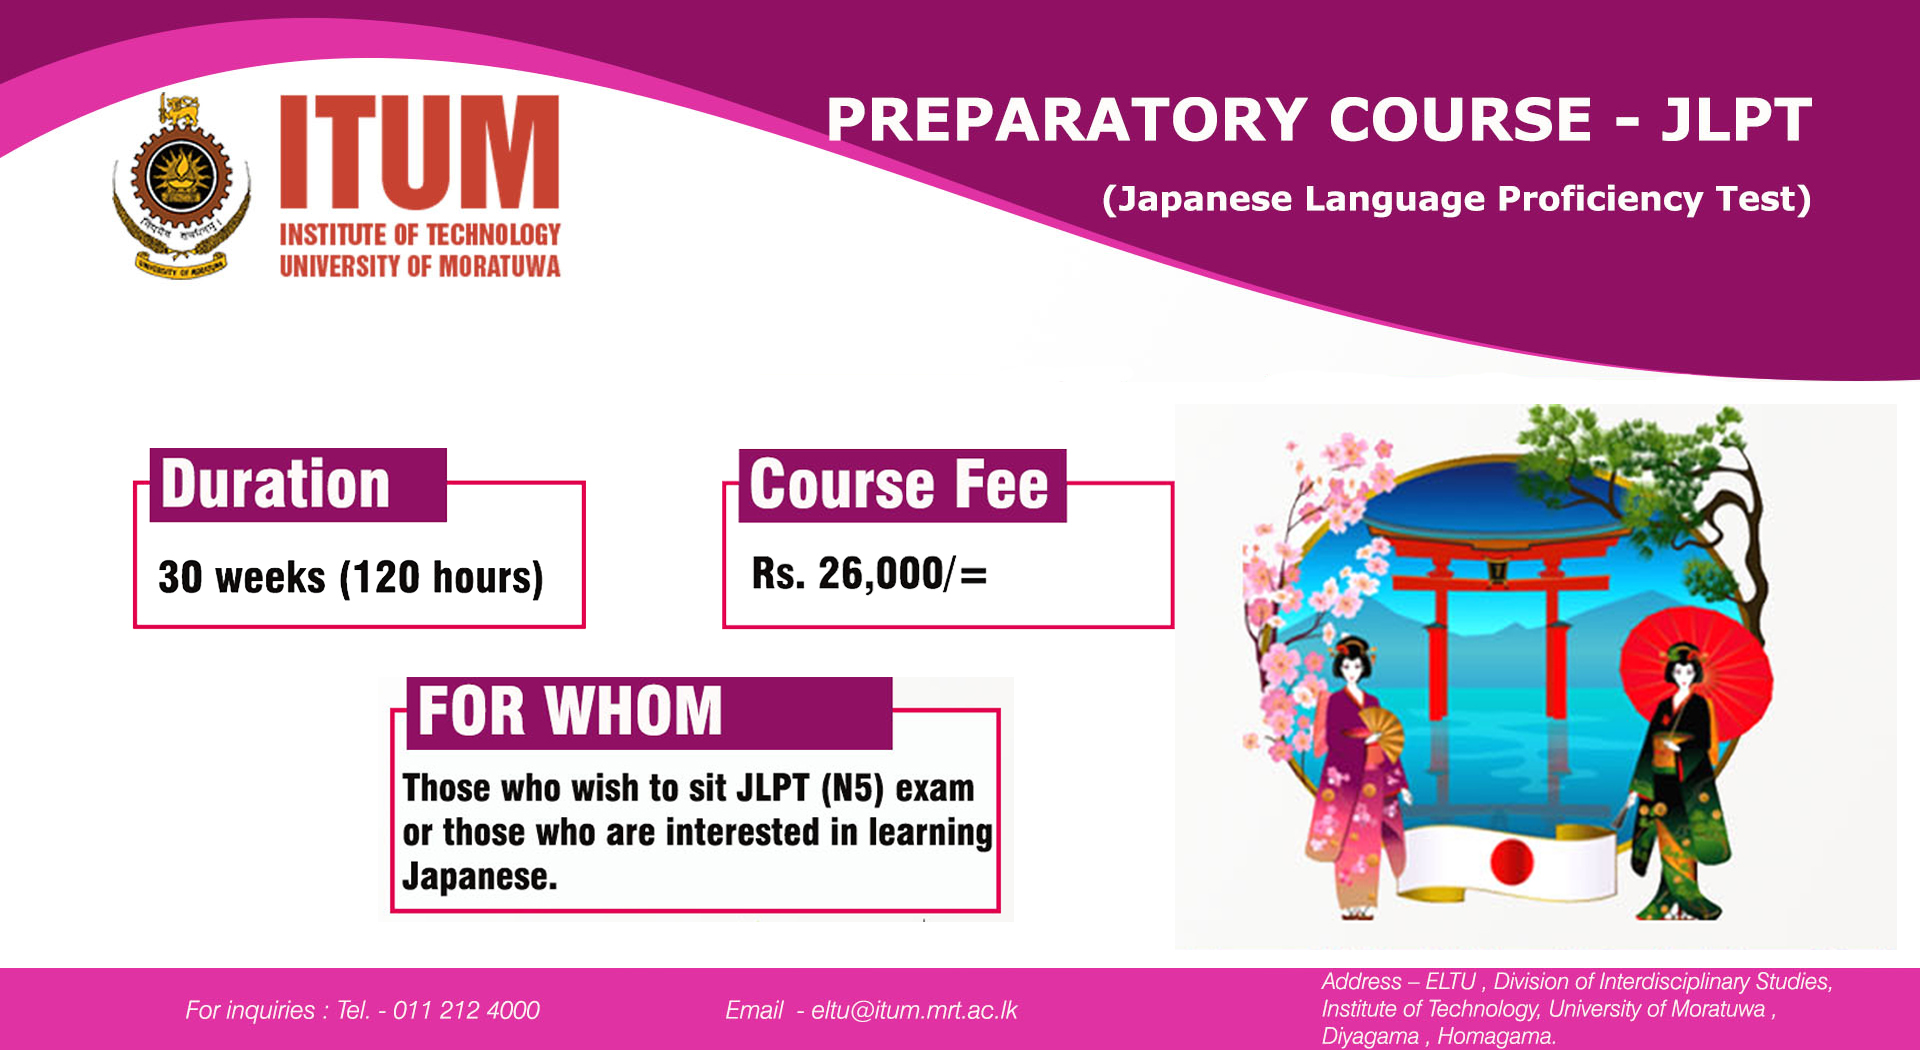 Preparatory Course - JLPT